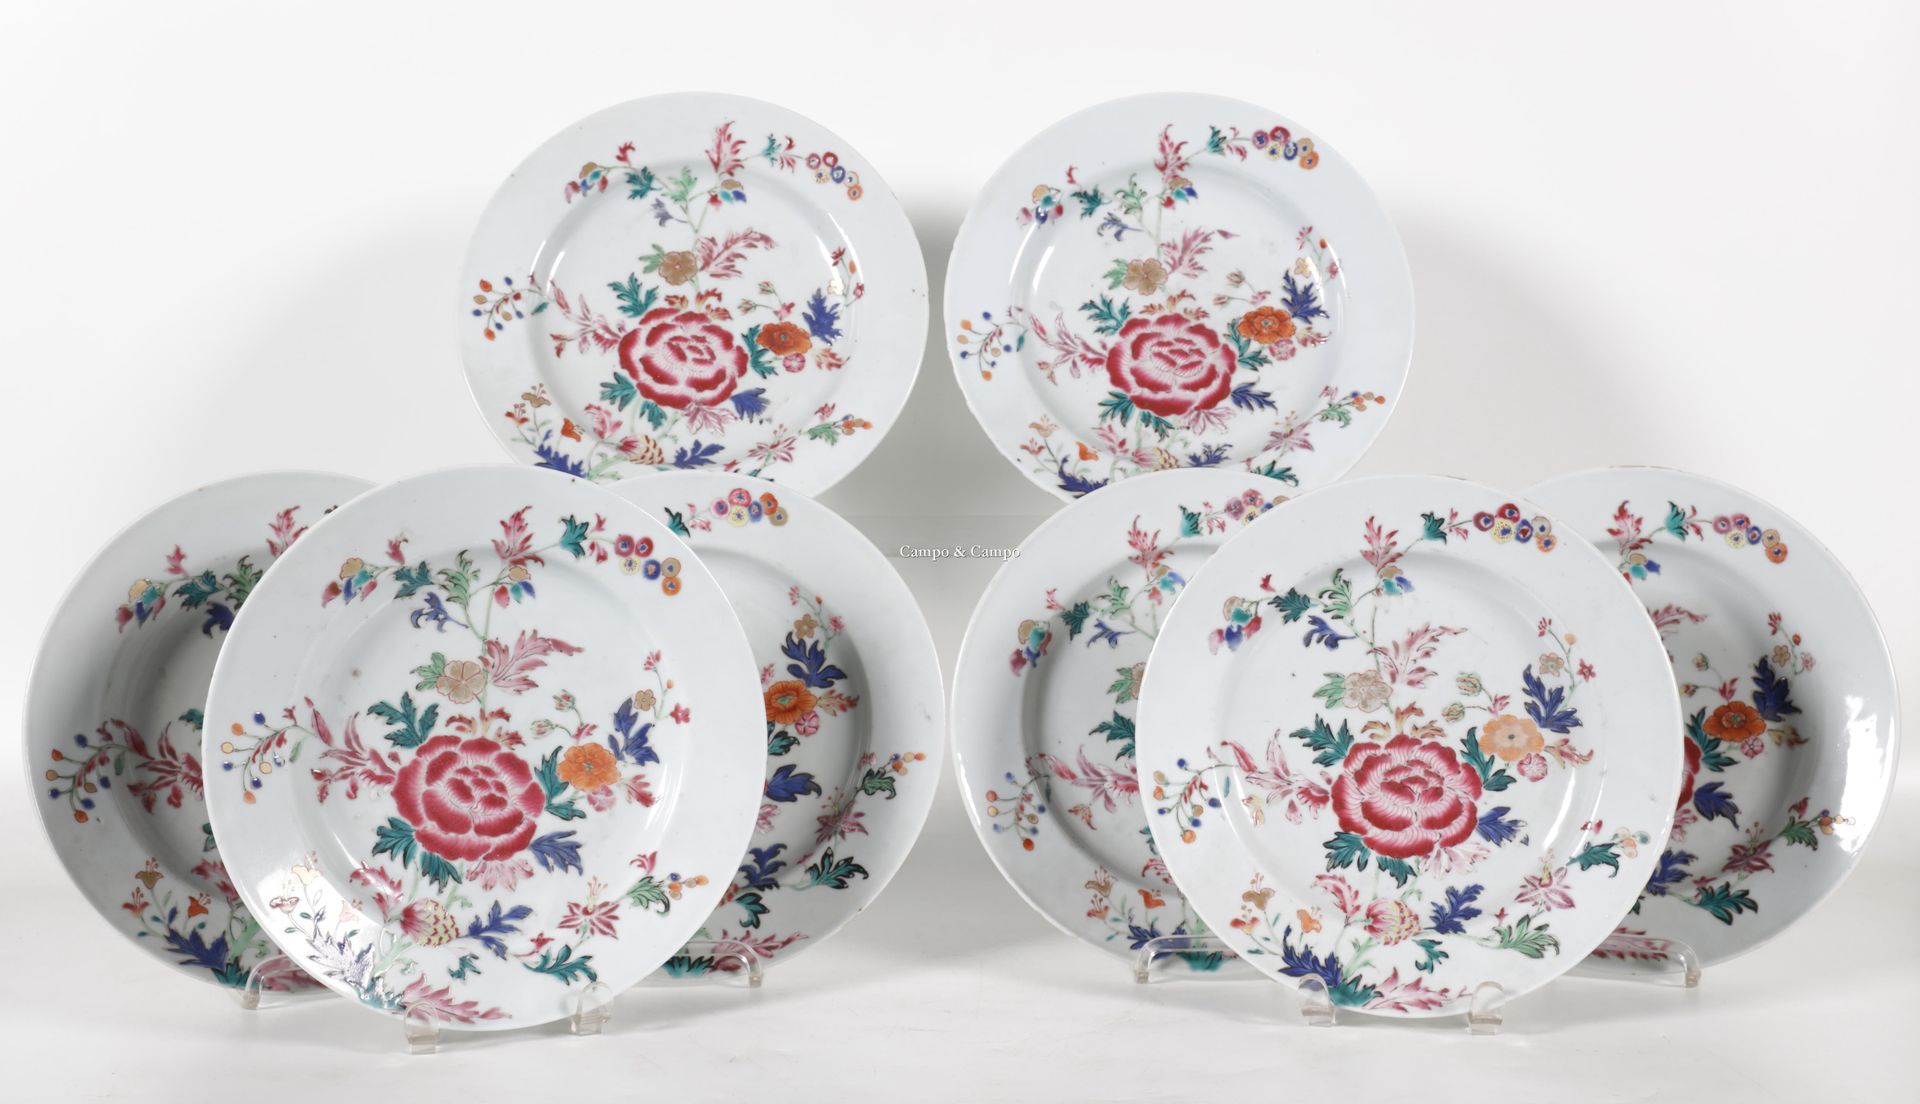 VARIA 八个花纹珐琅盘系列
Reeks van acht borden in famille rose porselein met bloemenmotie&hellip;